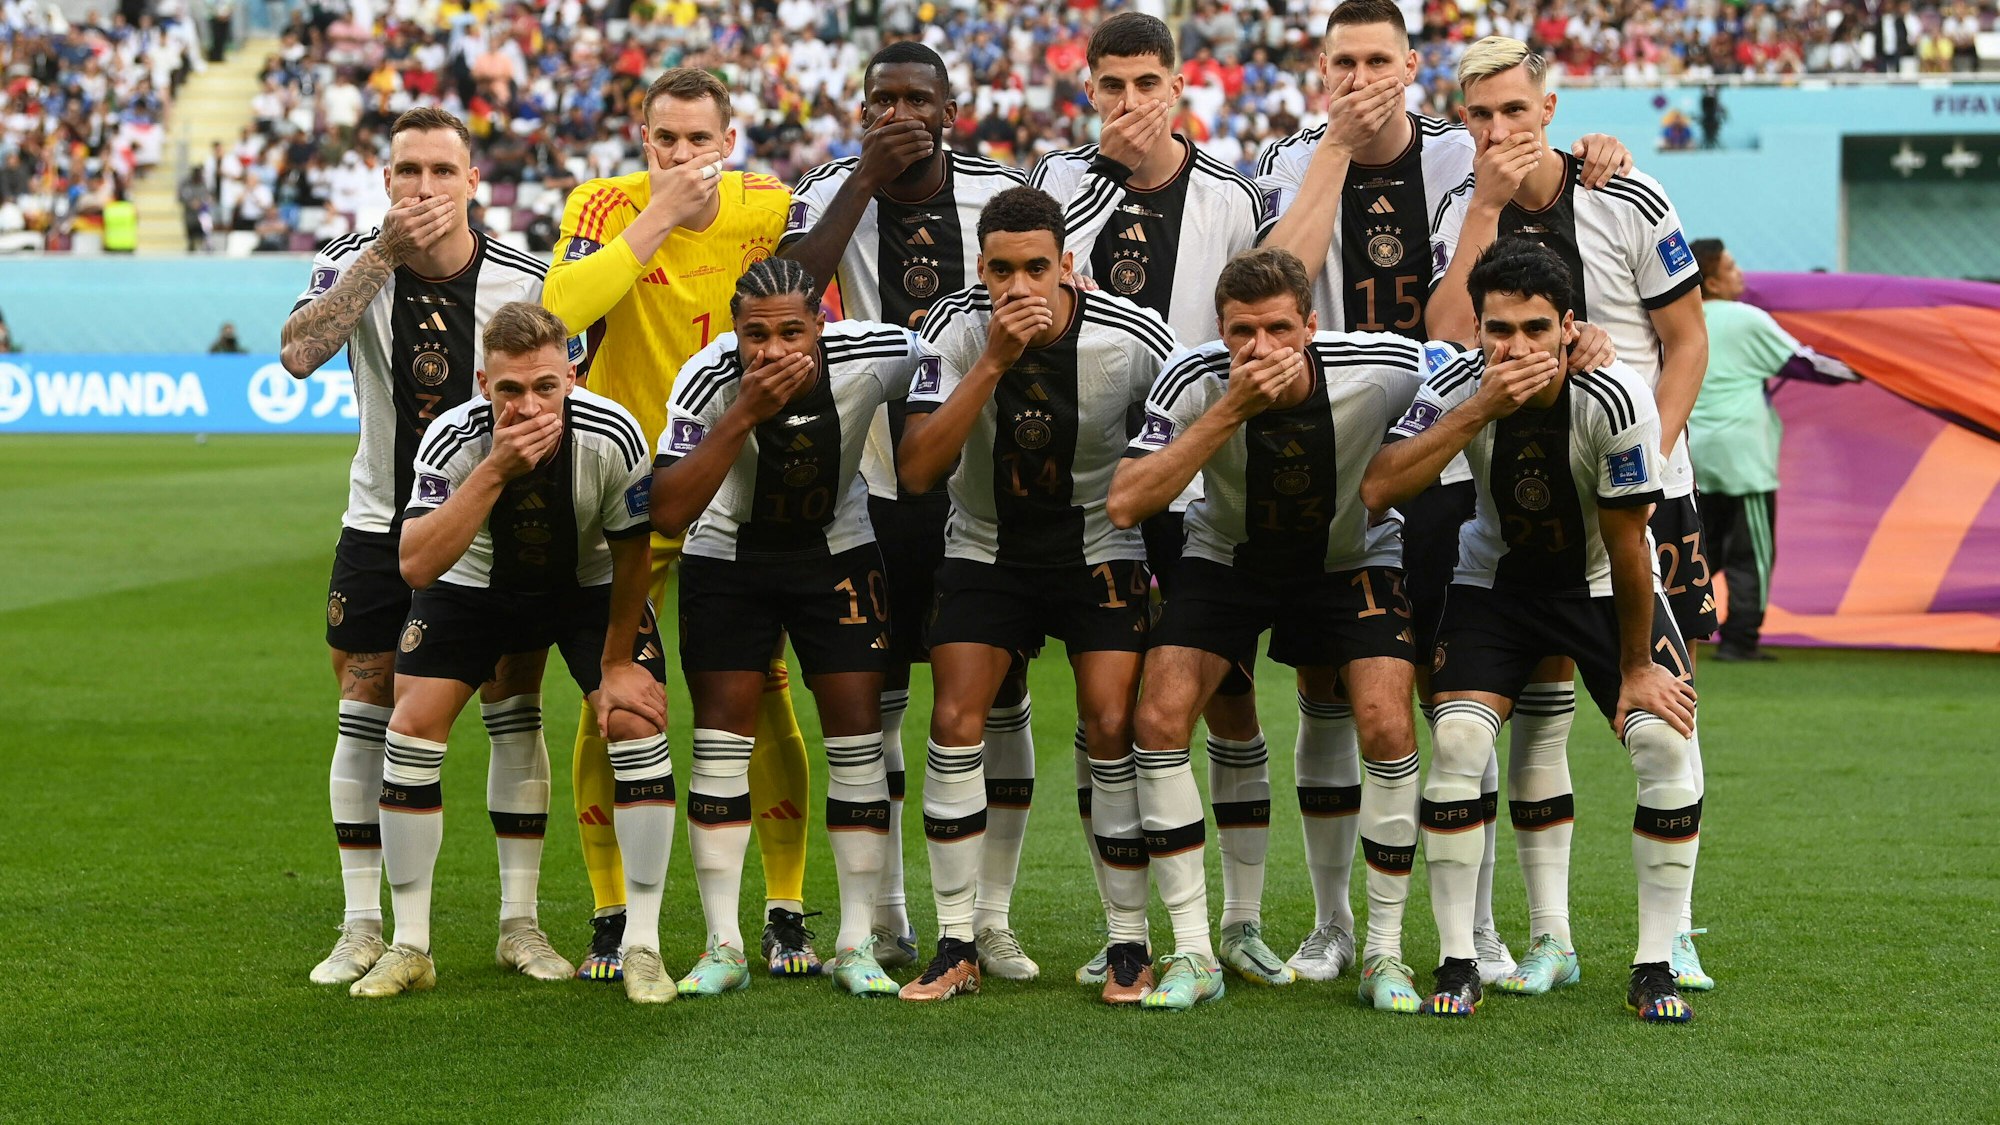 Die deutsche Fußball-Nationalmannschaft setzt mit einer Mund-Zu-Geste ein Zeichen gegen die Fifa, die zuvor das Tragen der One-Love-Armbinde verboten hatte.